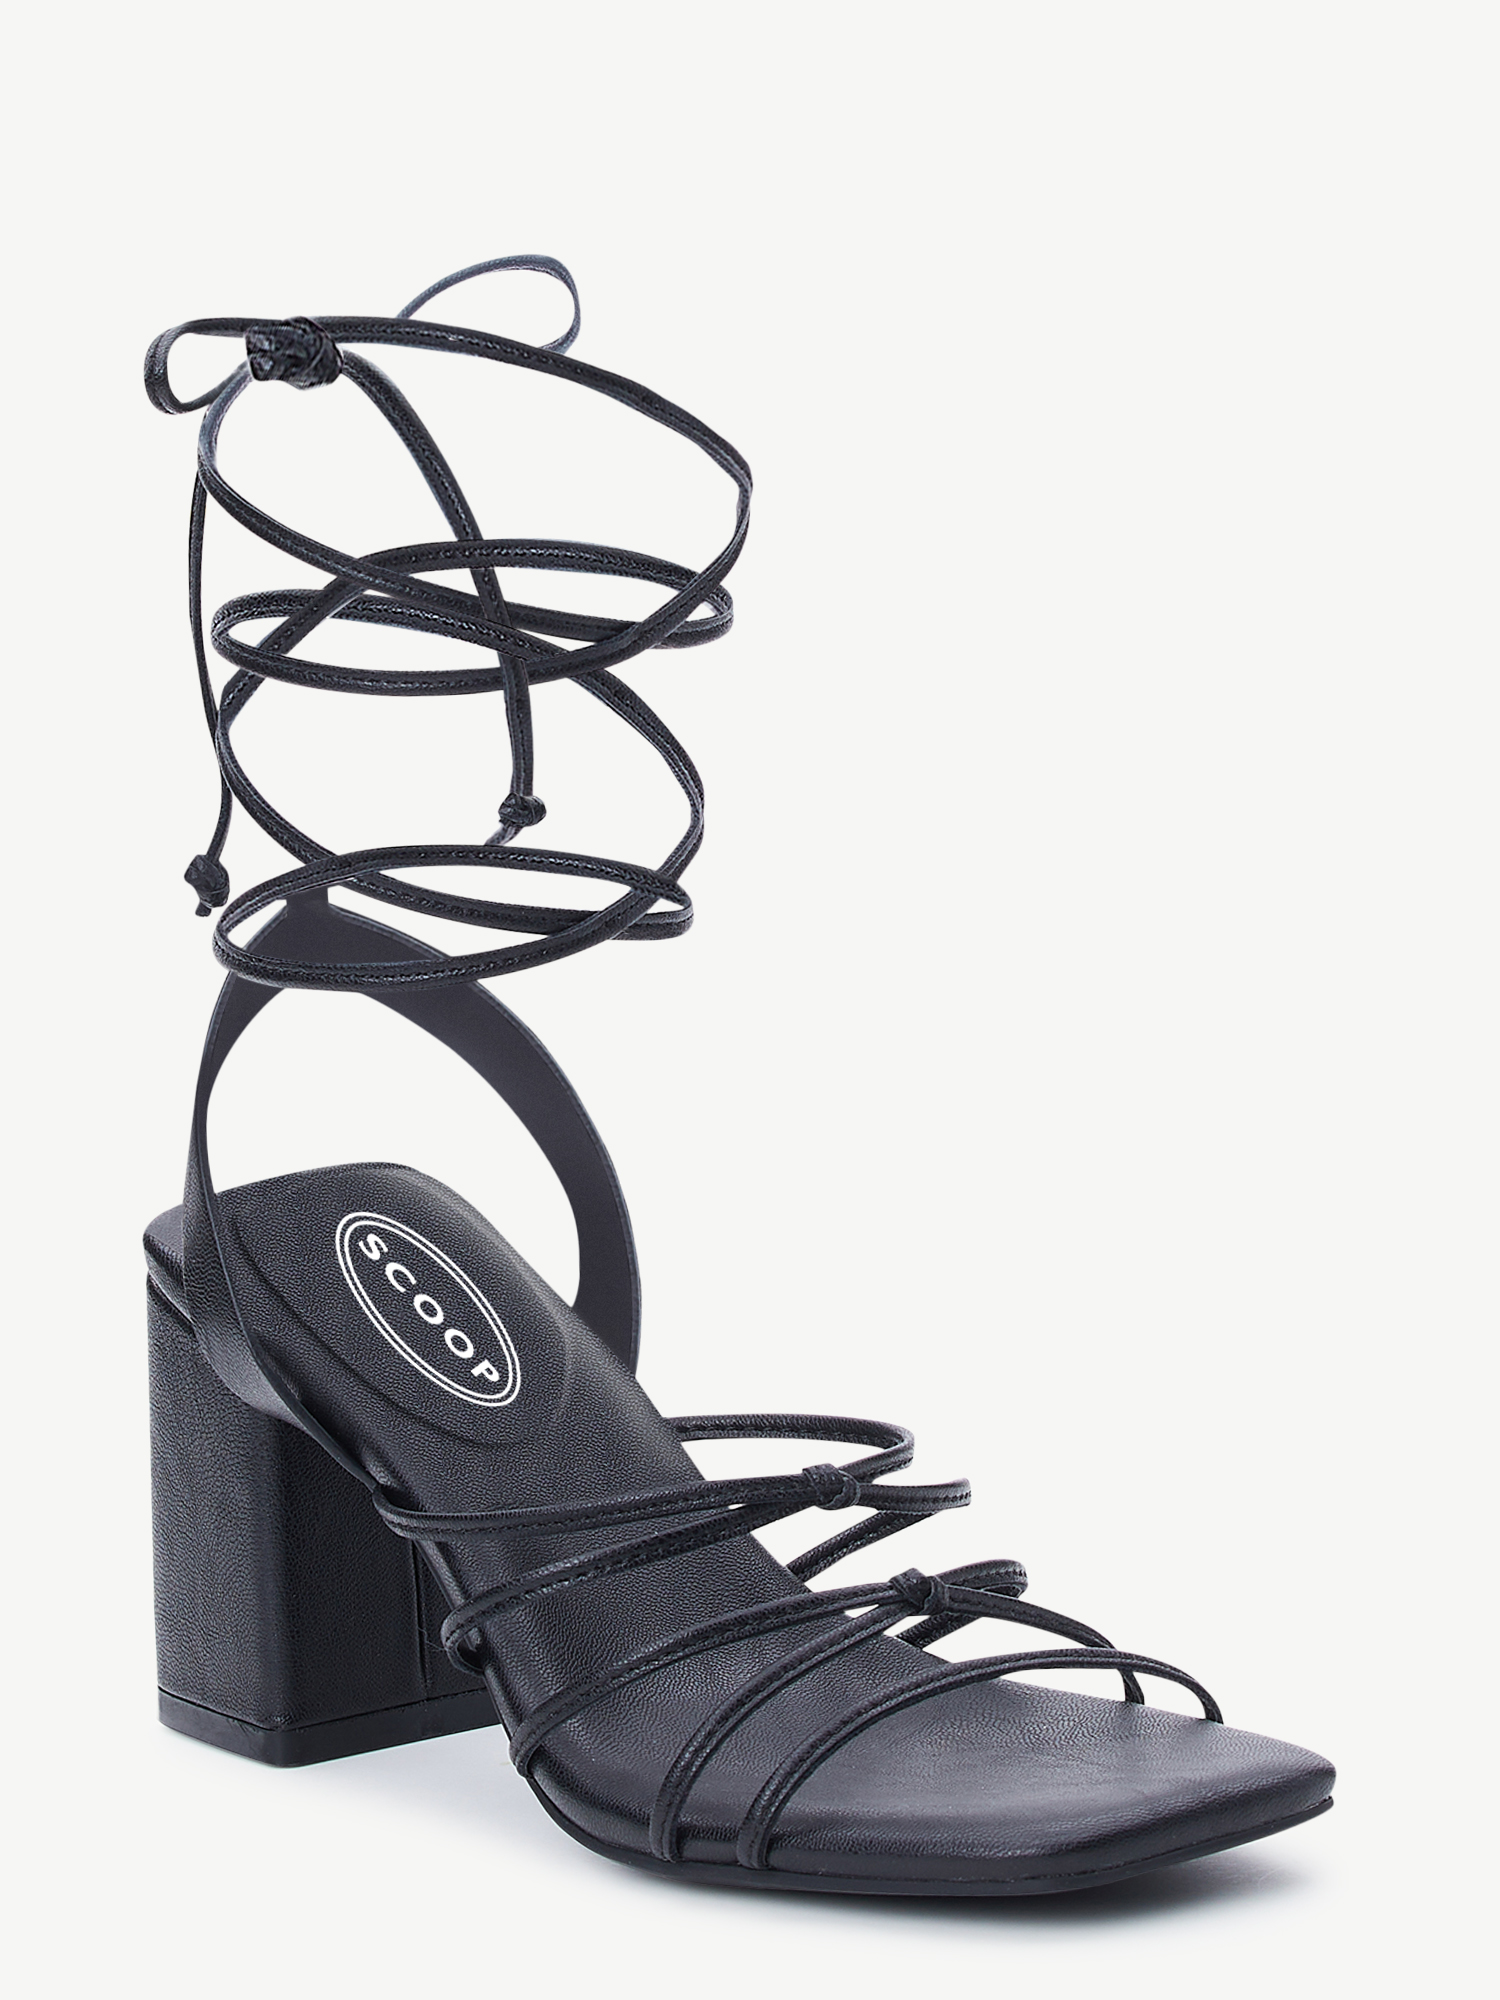 Scoop Women's Strappy Block Heel Sandals - image 1 of 7